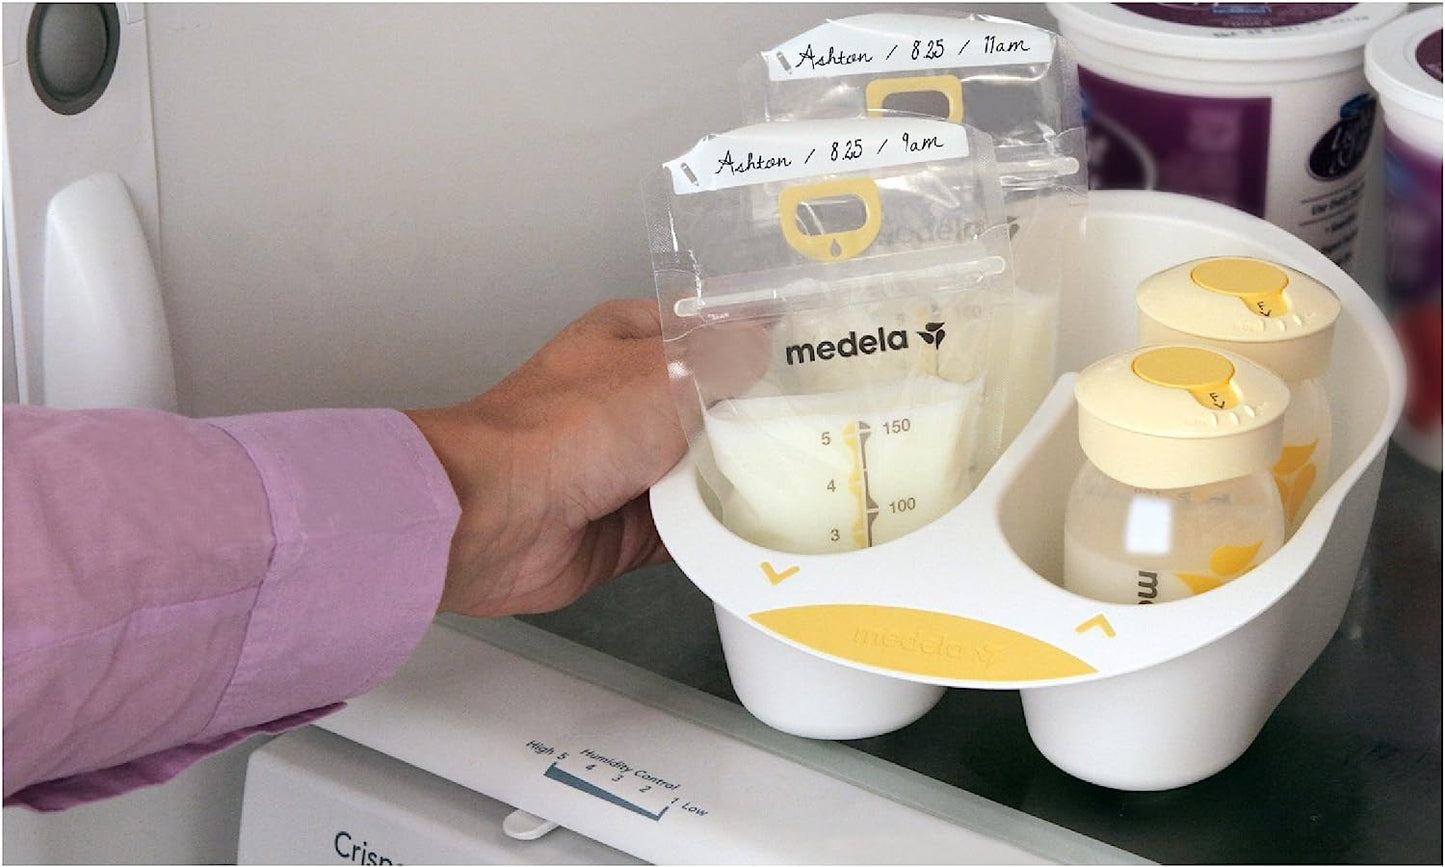 Medela Breast Milk Storage Solution